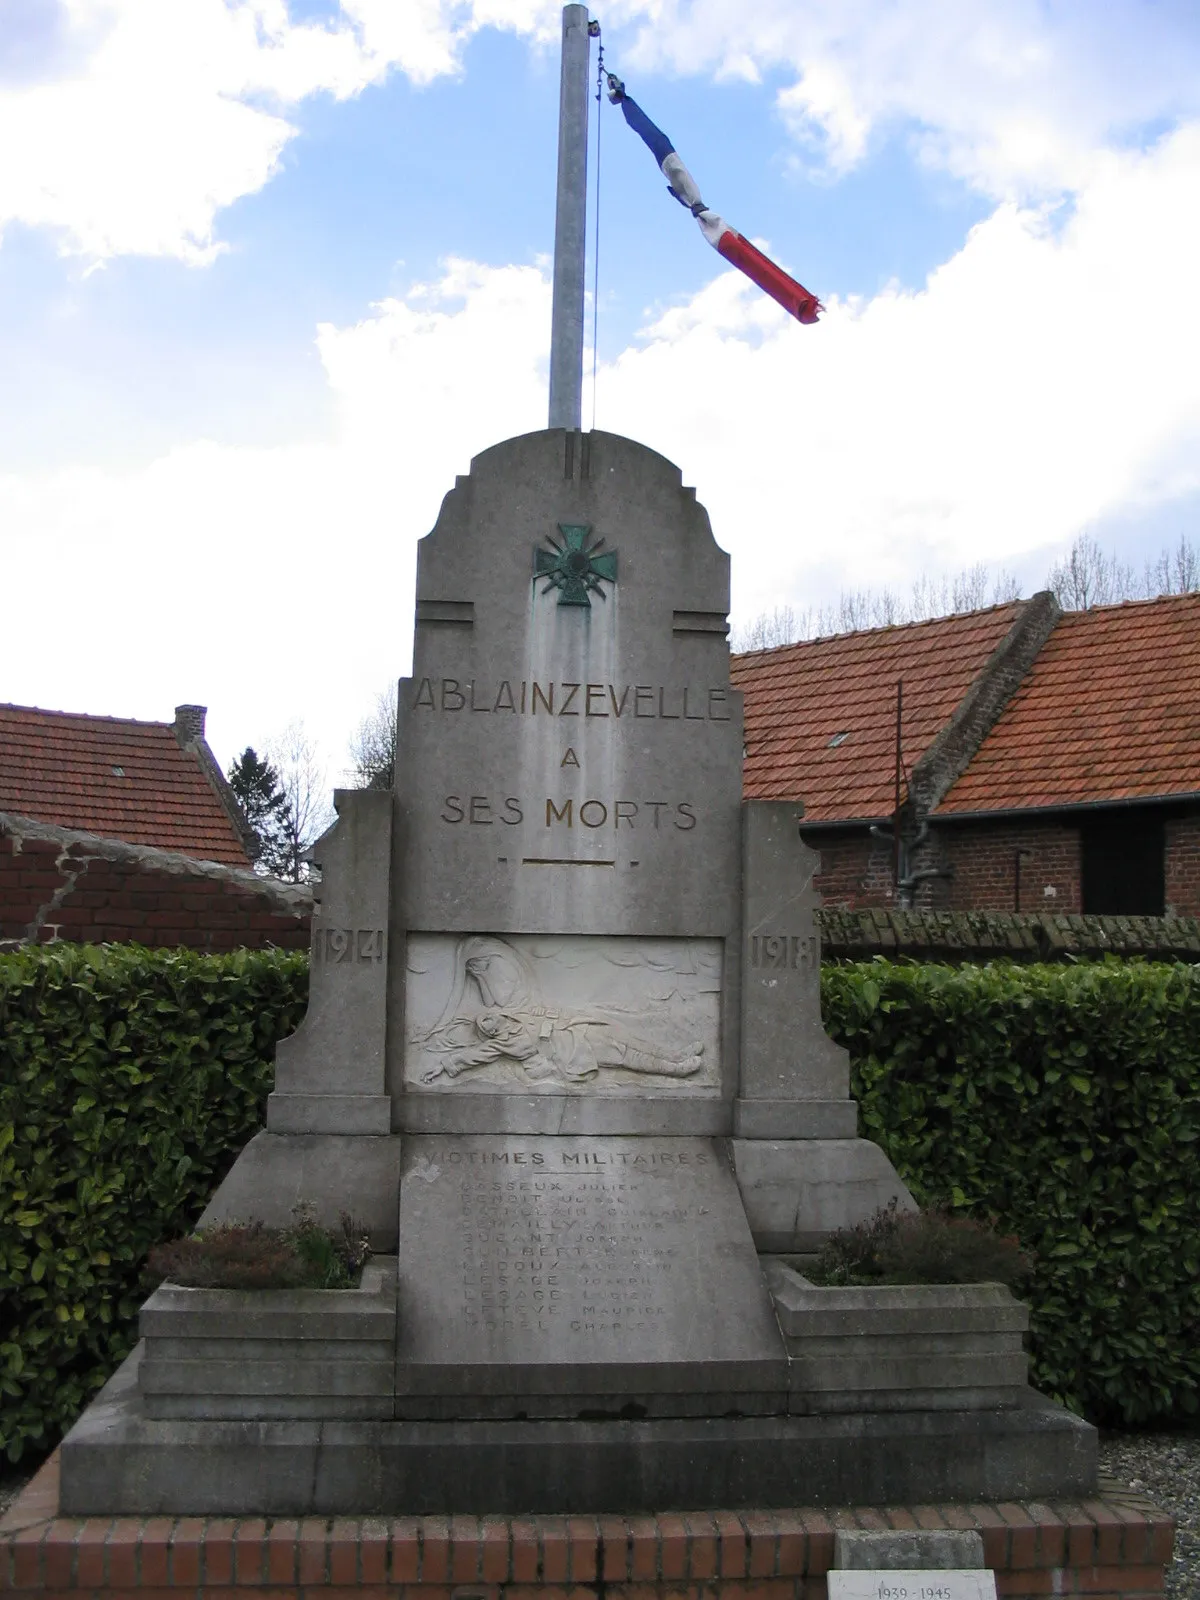 Photo showing: Monument aux morts d'Ablainzevelle